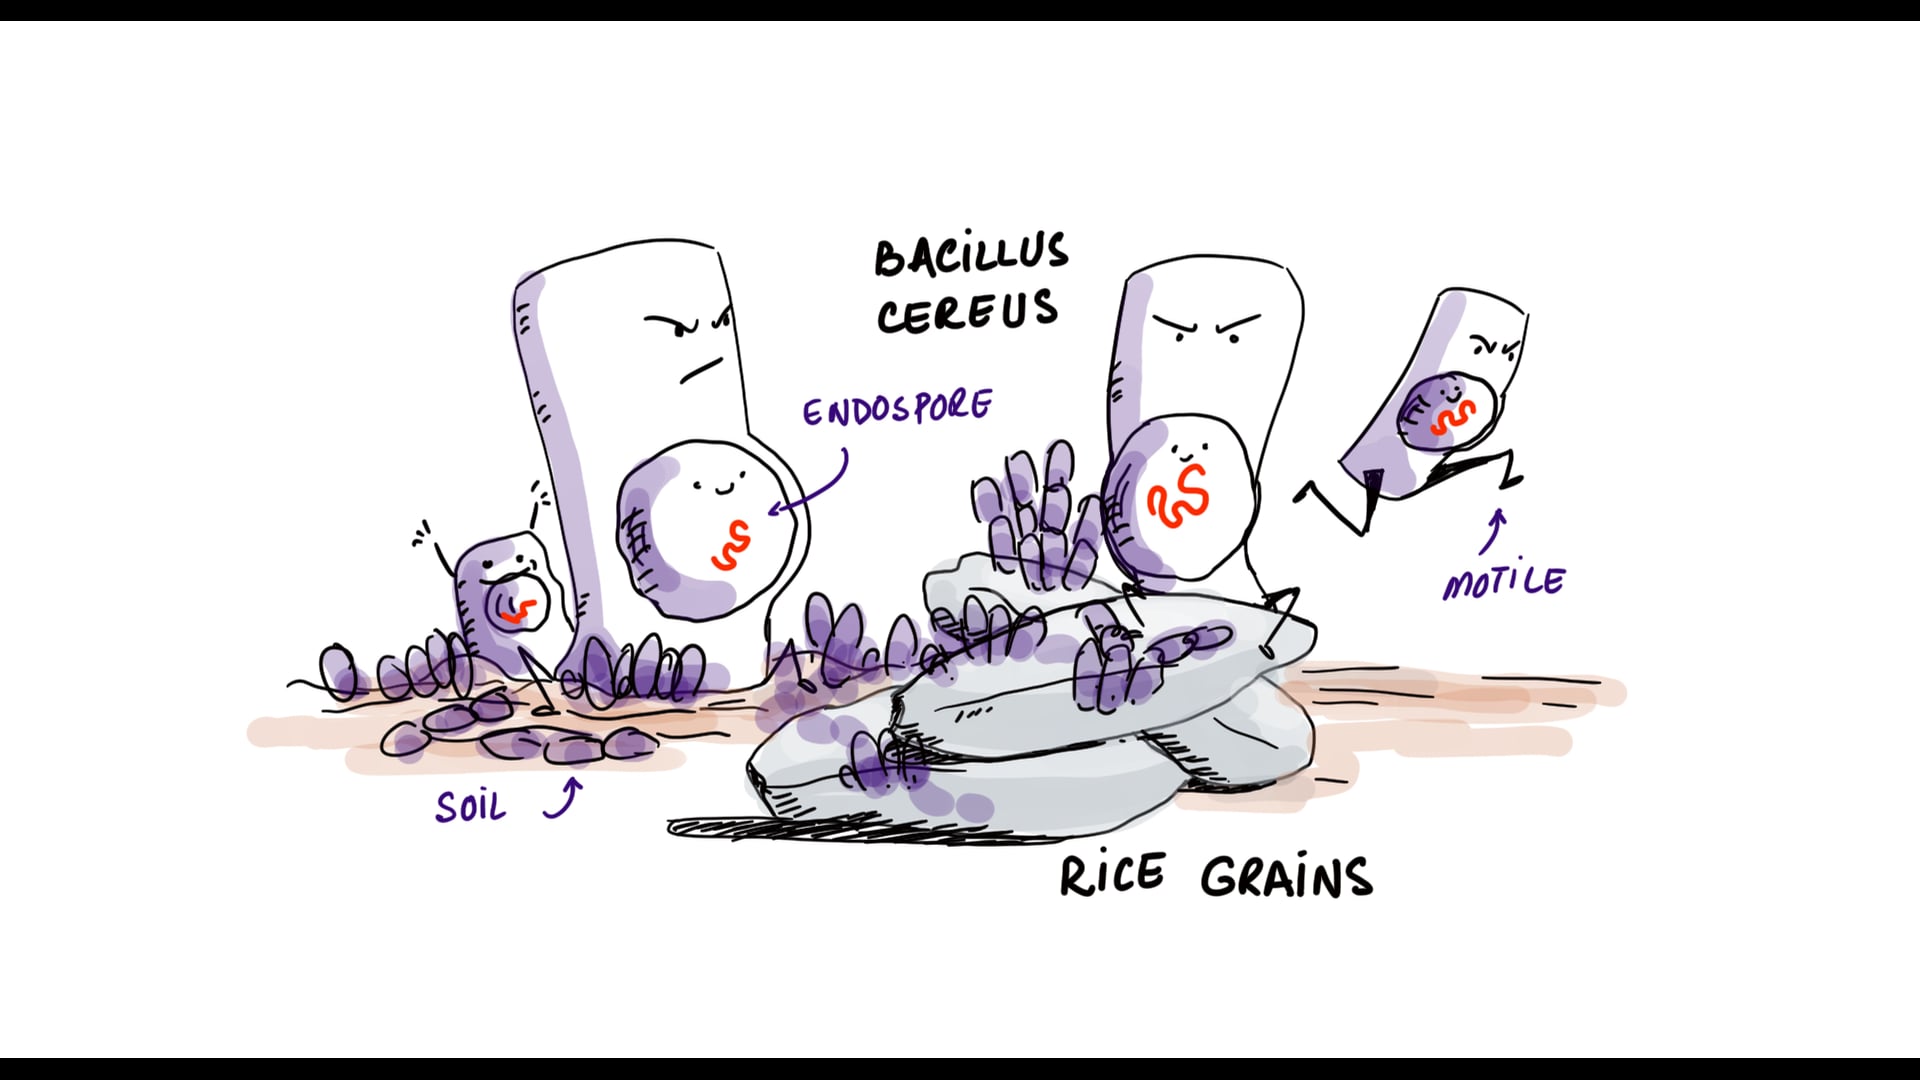 Bacillus Cereus